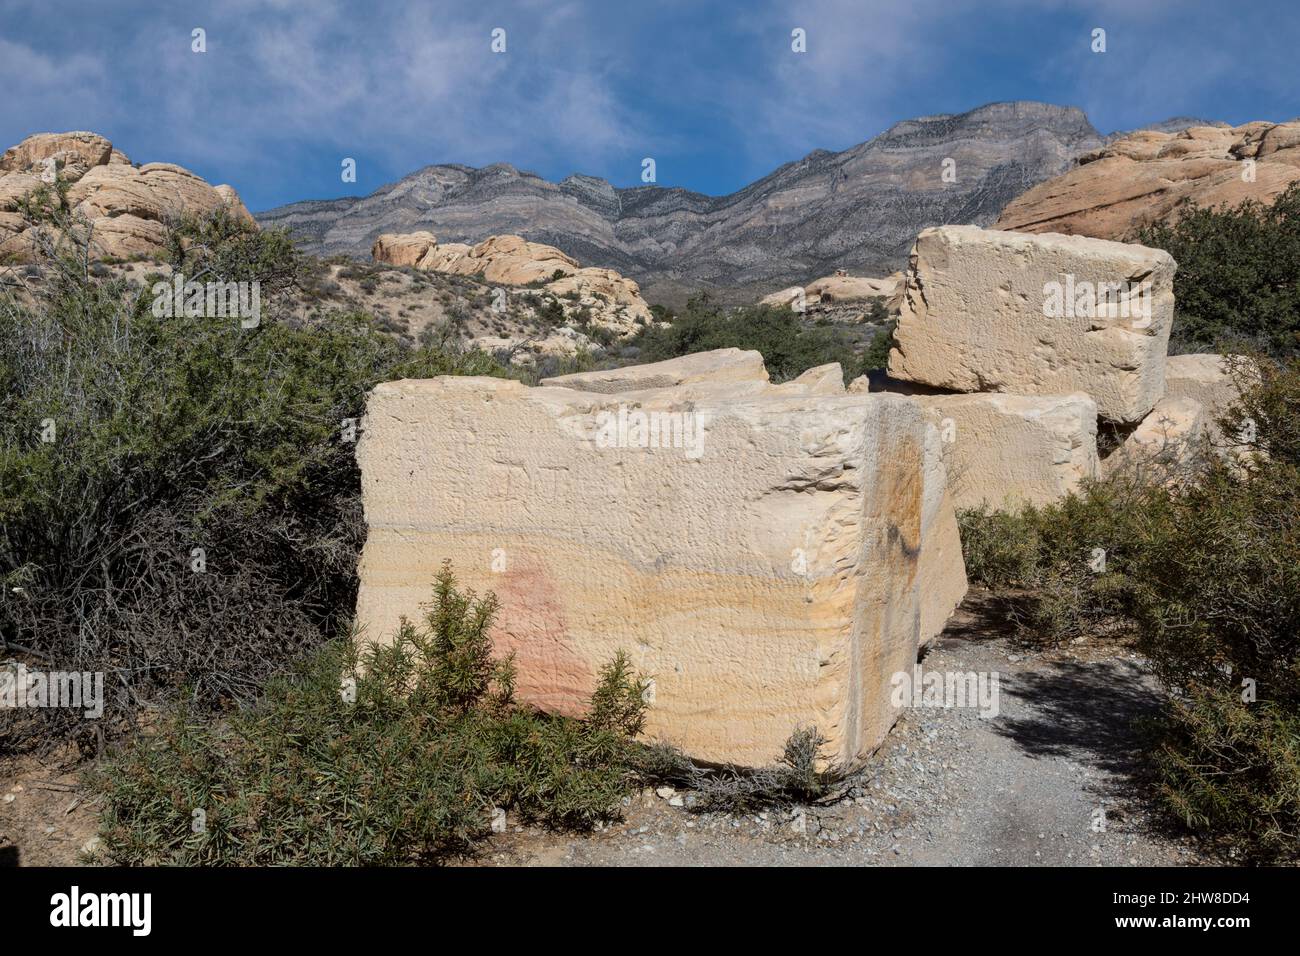 Red Rock Canyon, Nevada. Les blocs de pierre d'une carrière de grès qui a cessé ses opérations au début des années 1900. Banque D'Images